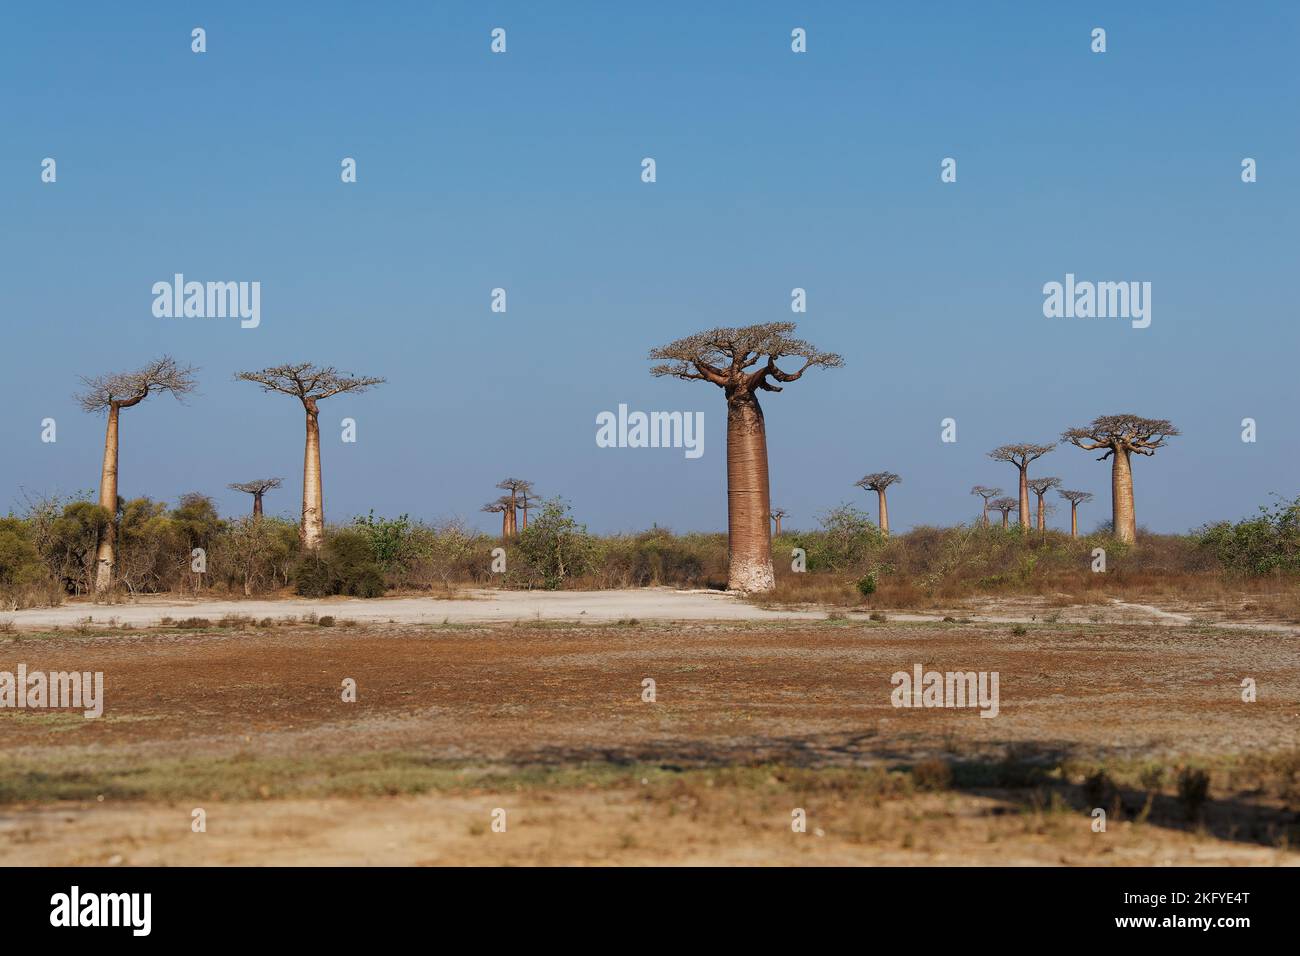 Paisaje con los grandes árboles baobabs en Madagascar. Callejón baobab Durante el día, famoso callejón baobab alrededor de la polvorienta carretera en la costa occidental de Mad Foto de stock